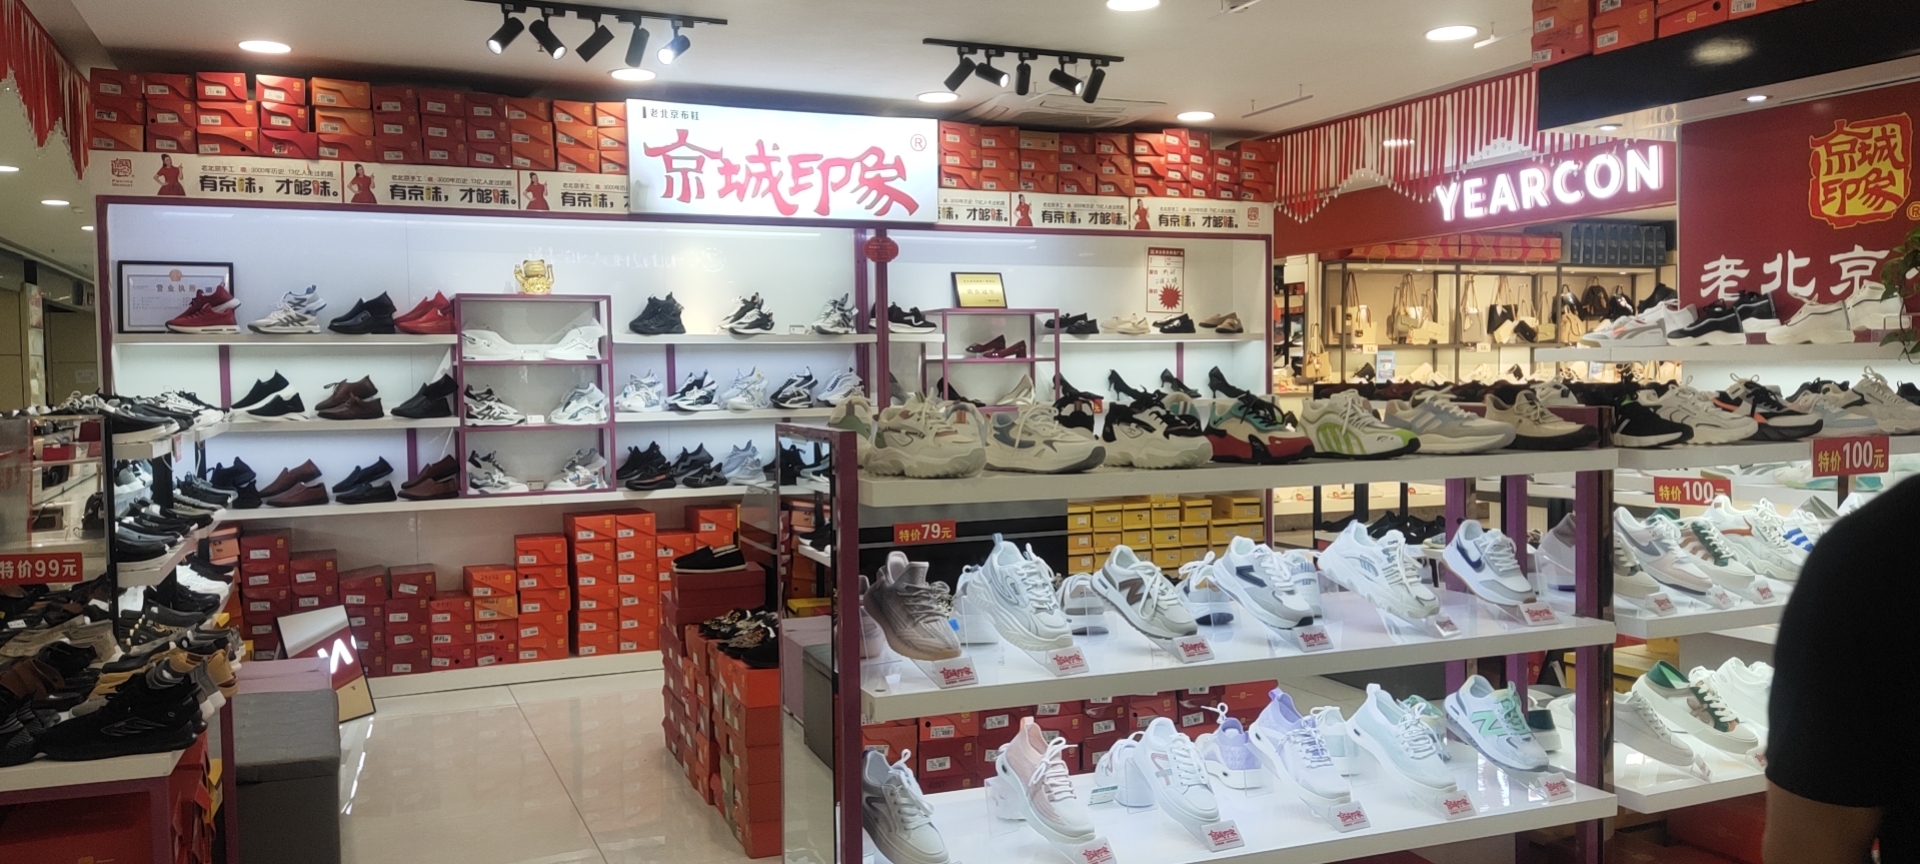 贺：京城印象老北京布鞋加盟店山西晋中马老板盛大开业！